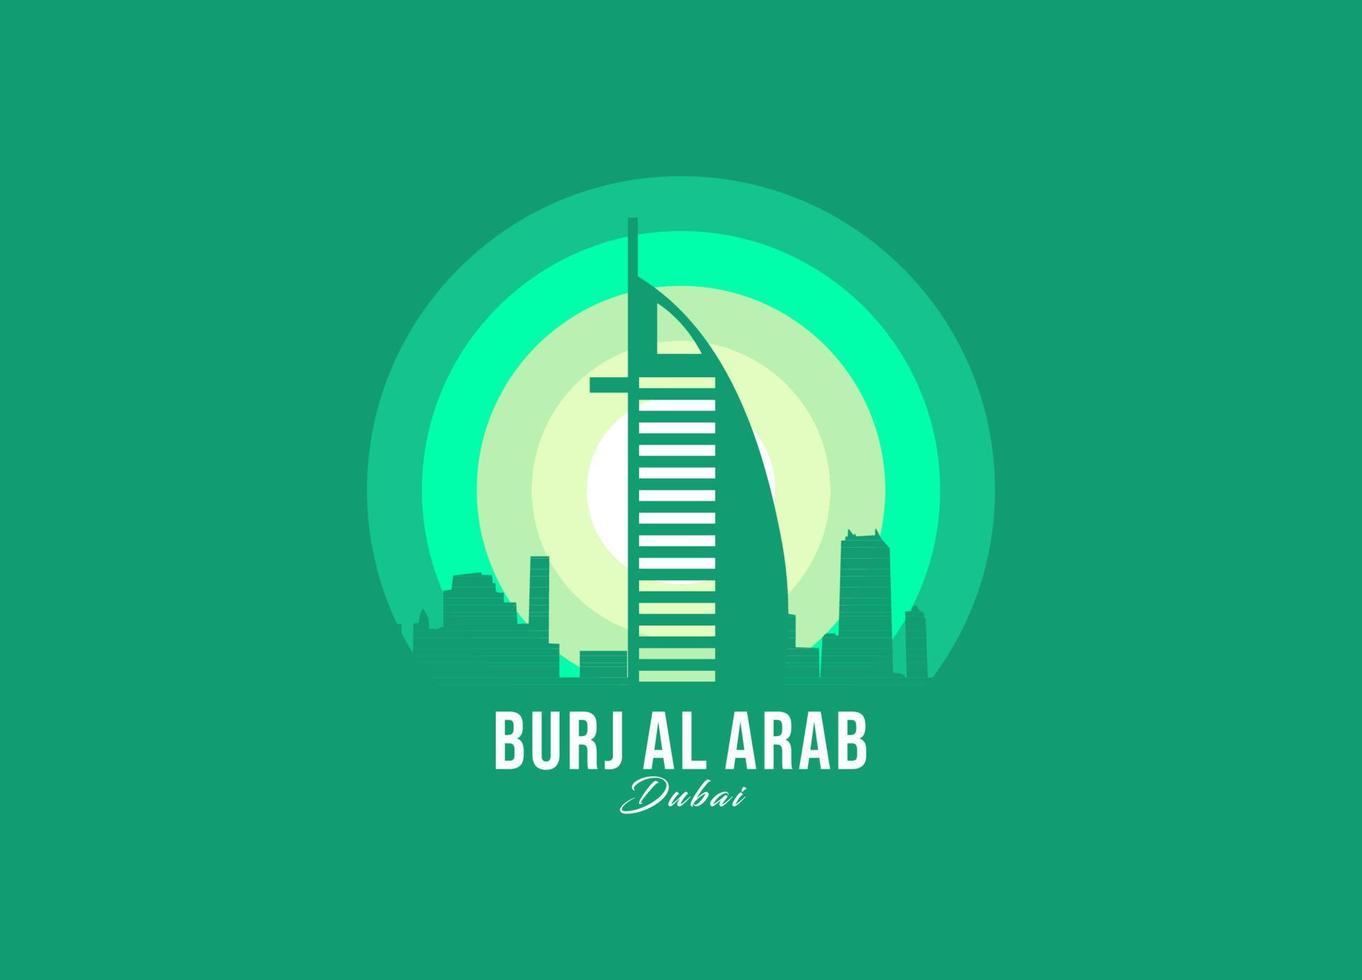 burj al arab i dubai logotyp. världens största arkitekturillustration. modern månsken symbol vektor. eps 10 vektor